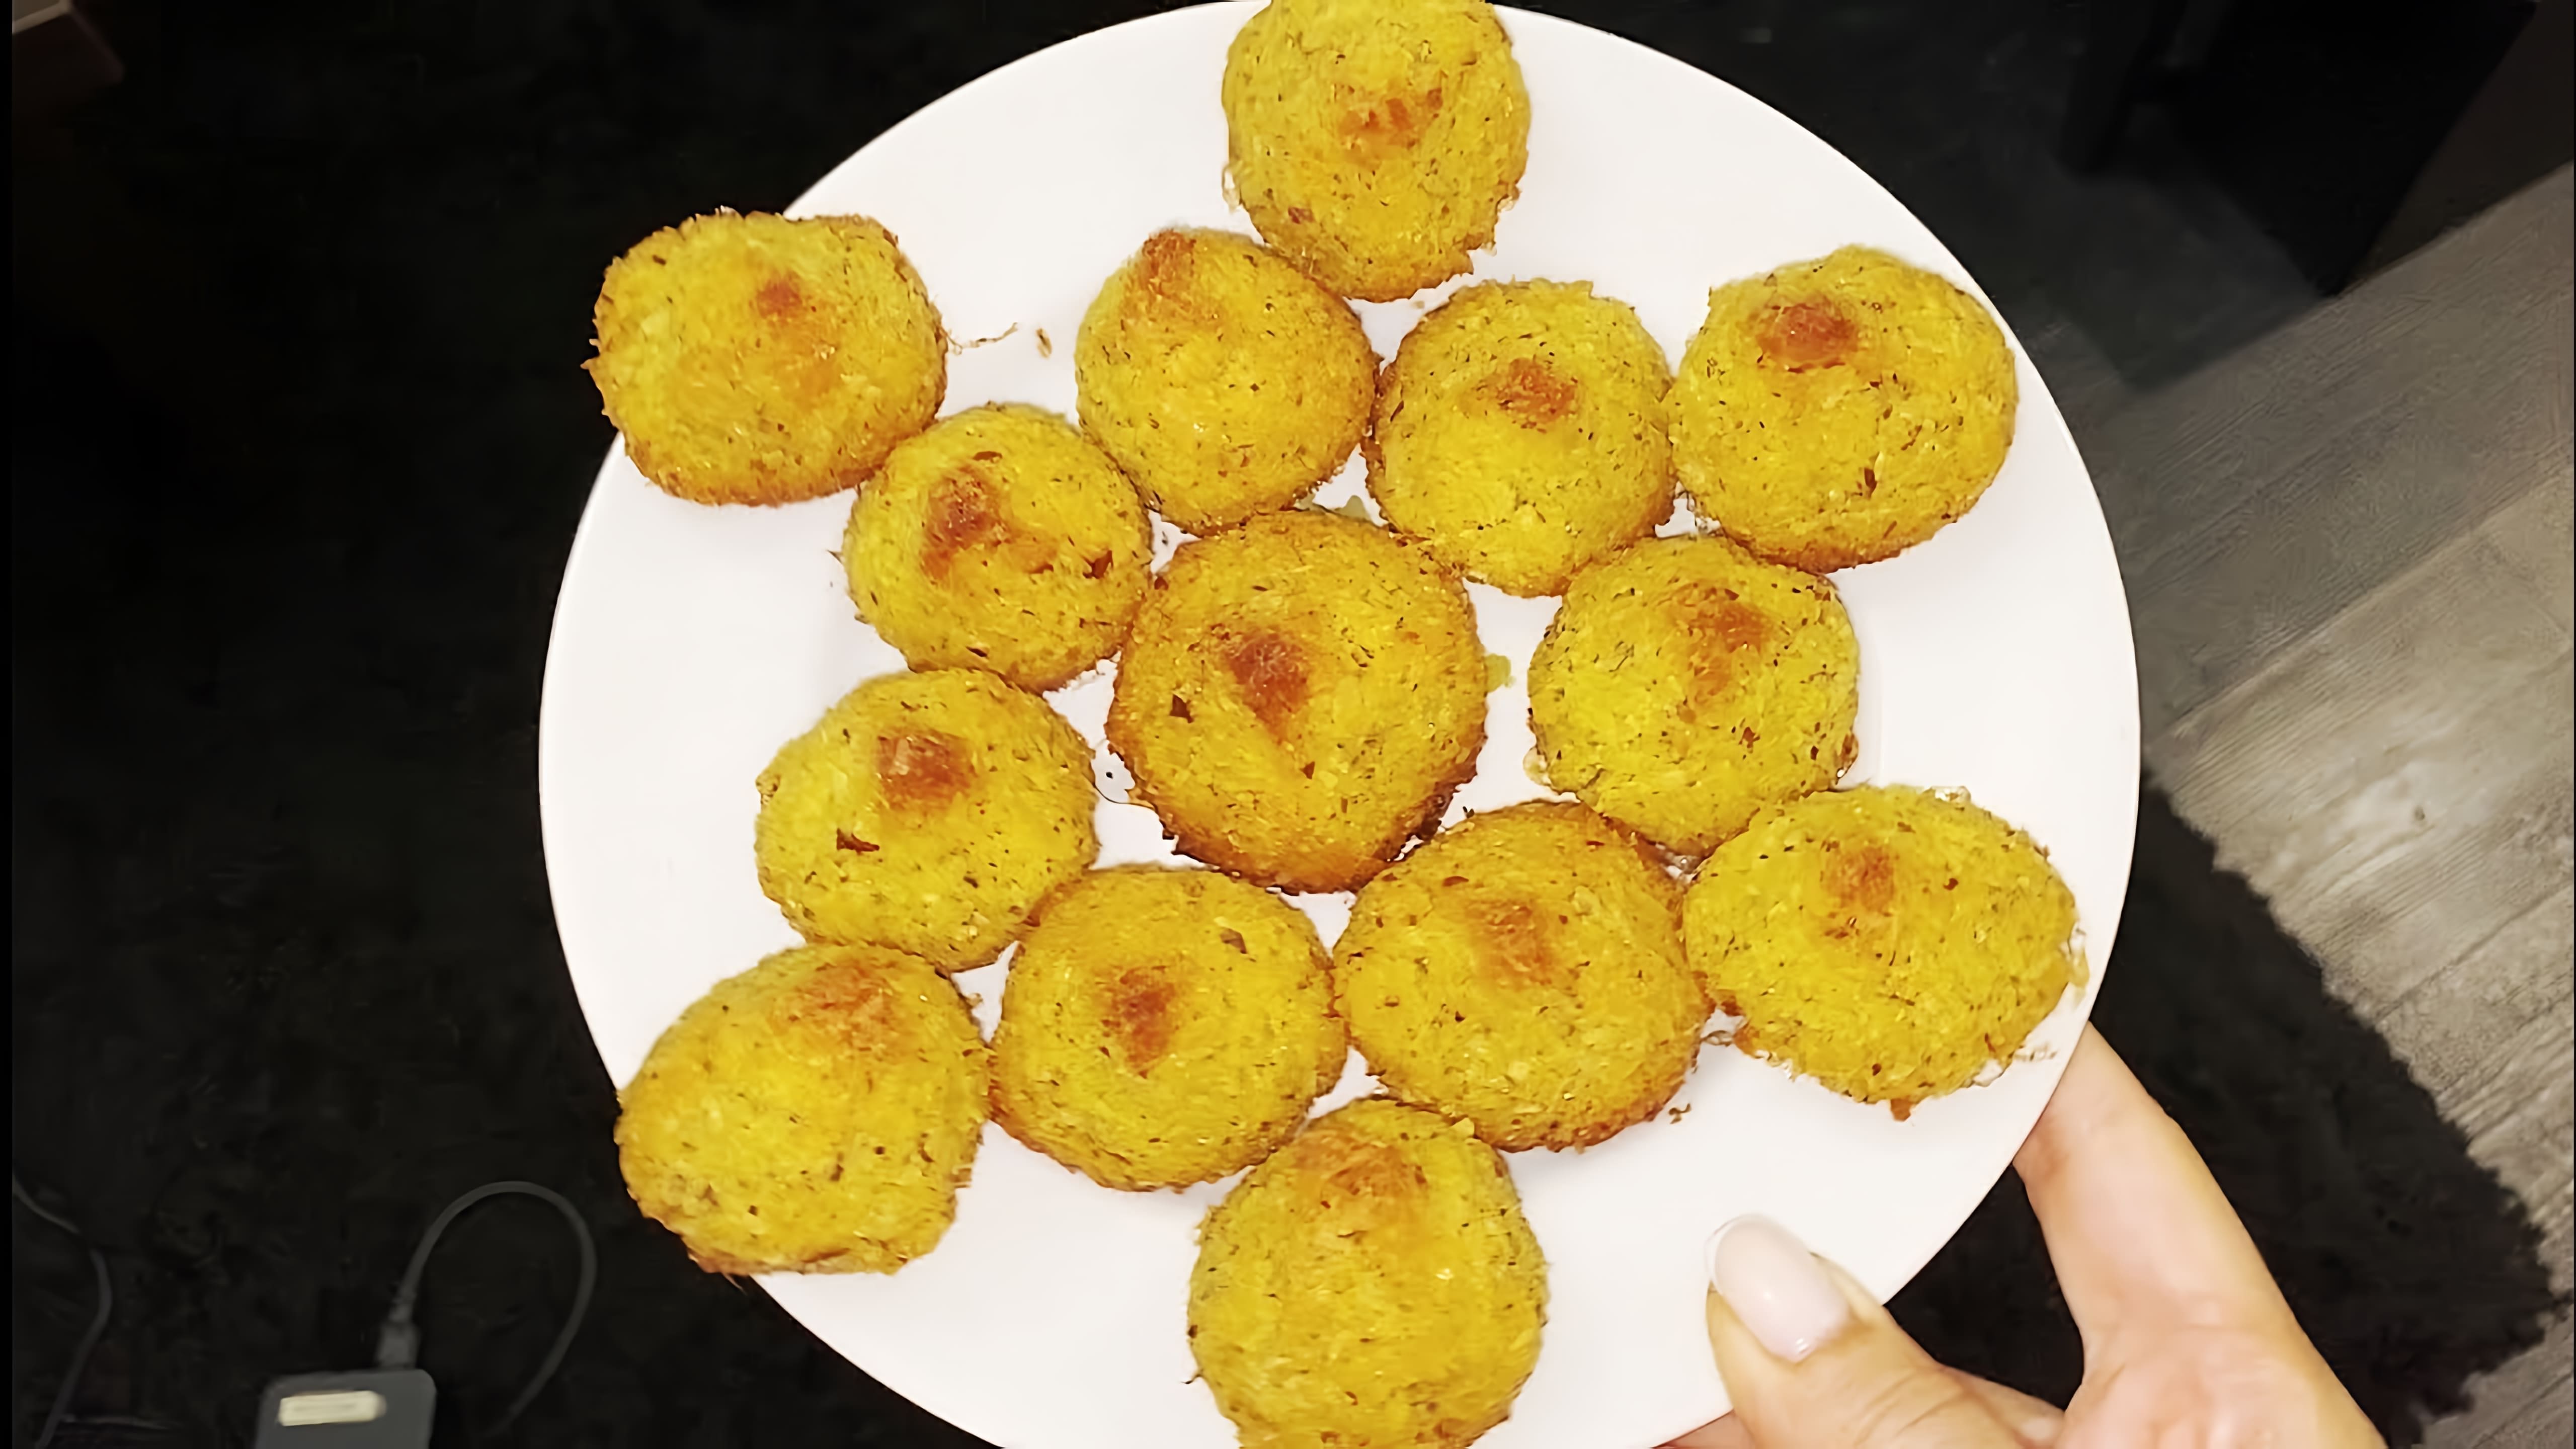 В этом видео демонстрируется рецепт приготовления печенья "Кокосанка" без использования муки